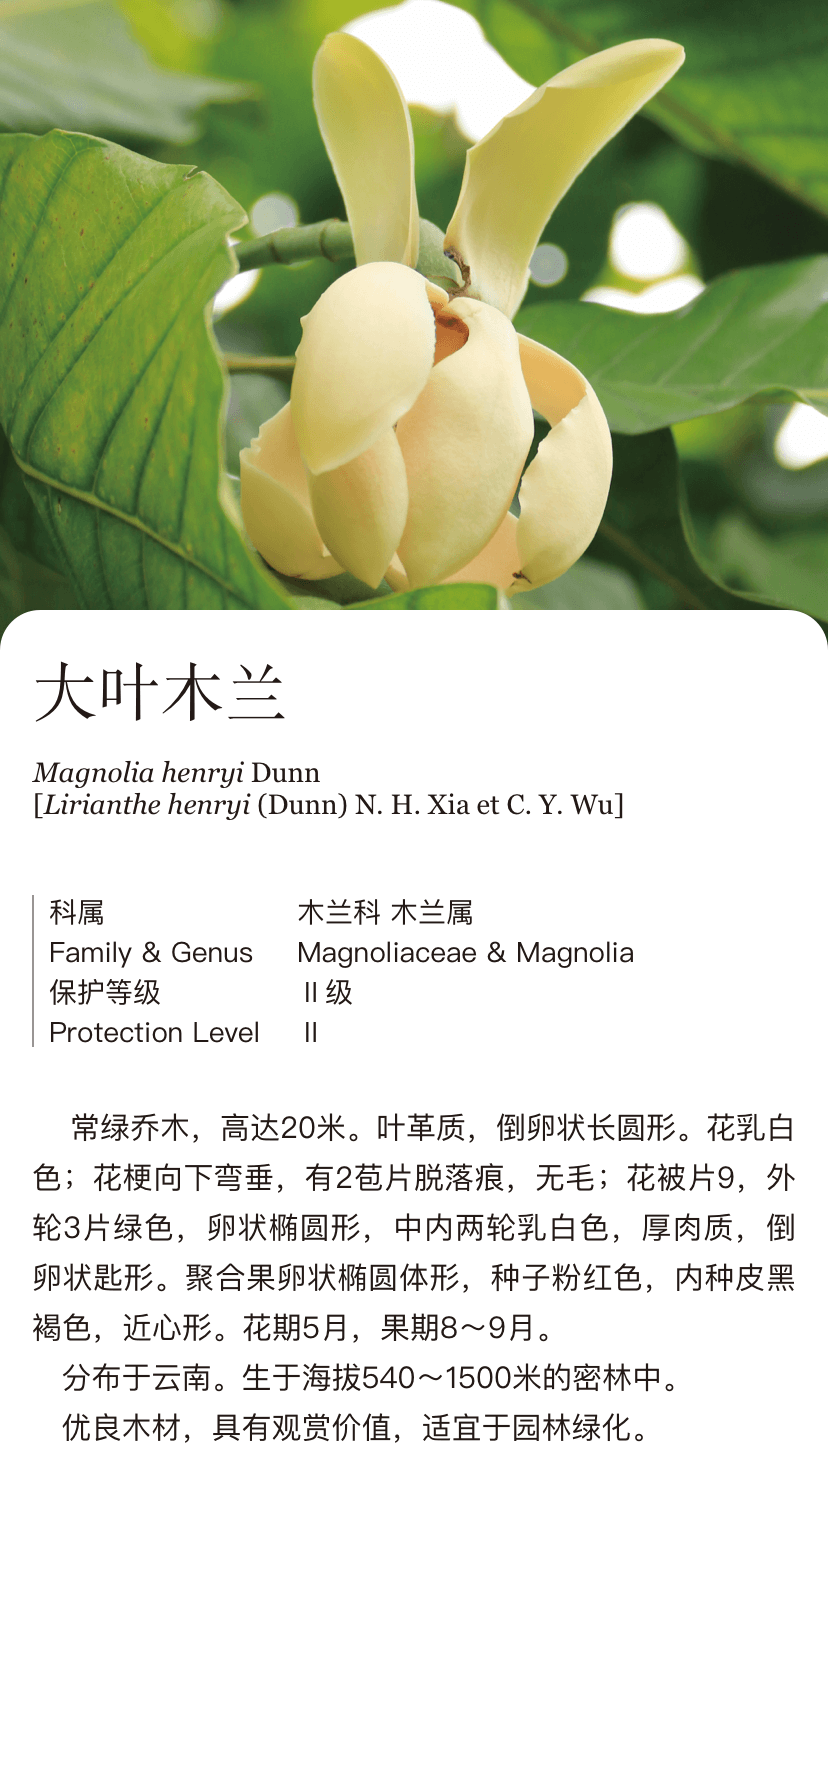 大叶木兰magnoliahenryidunn